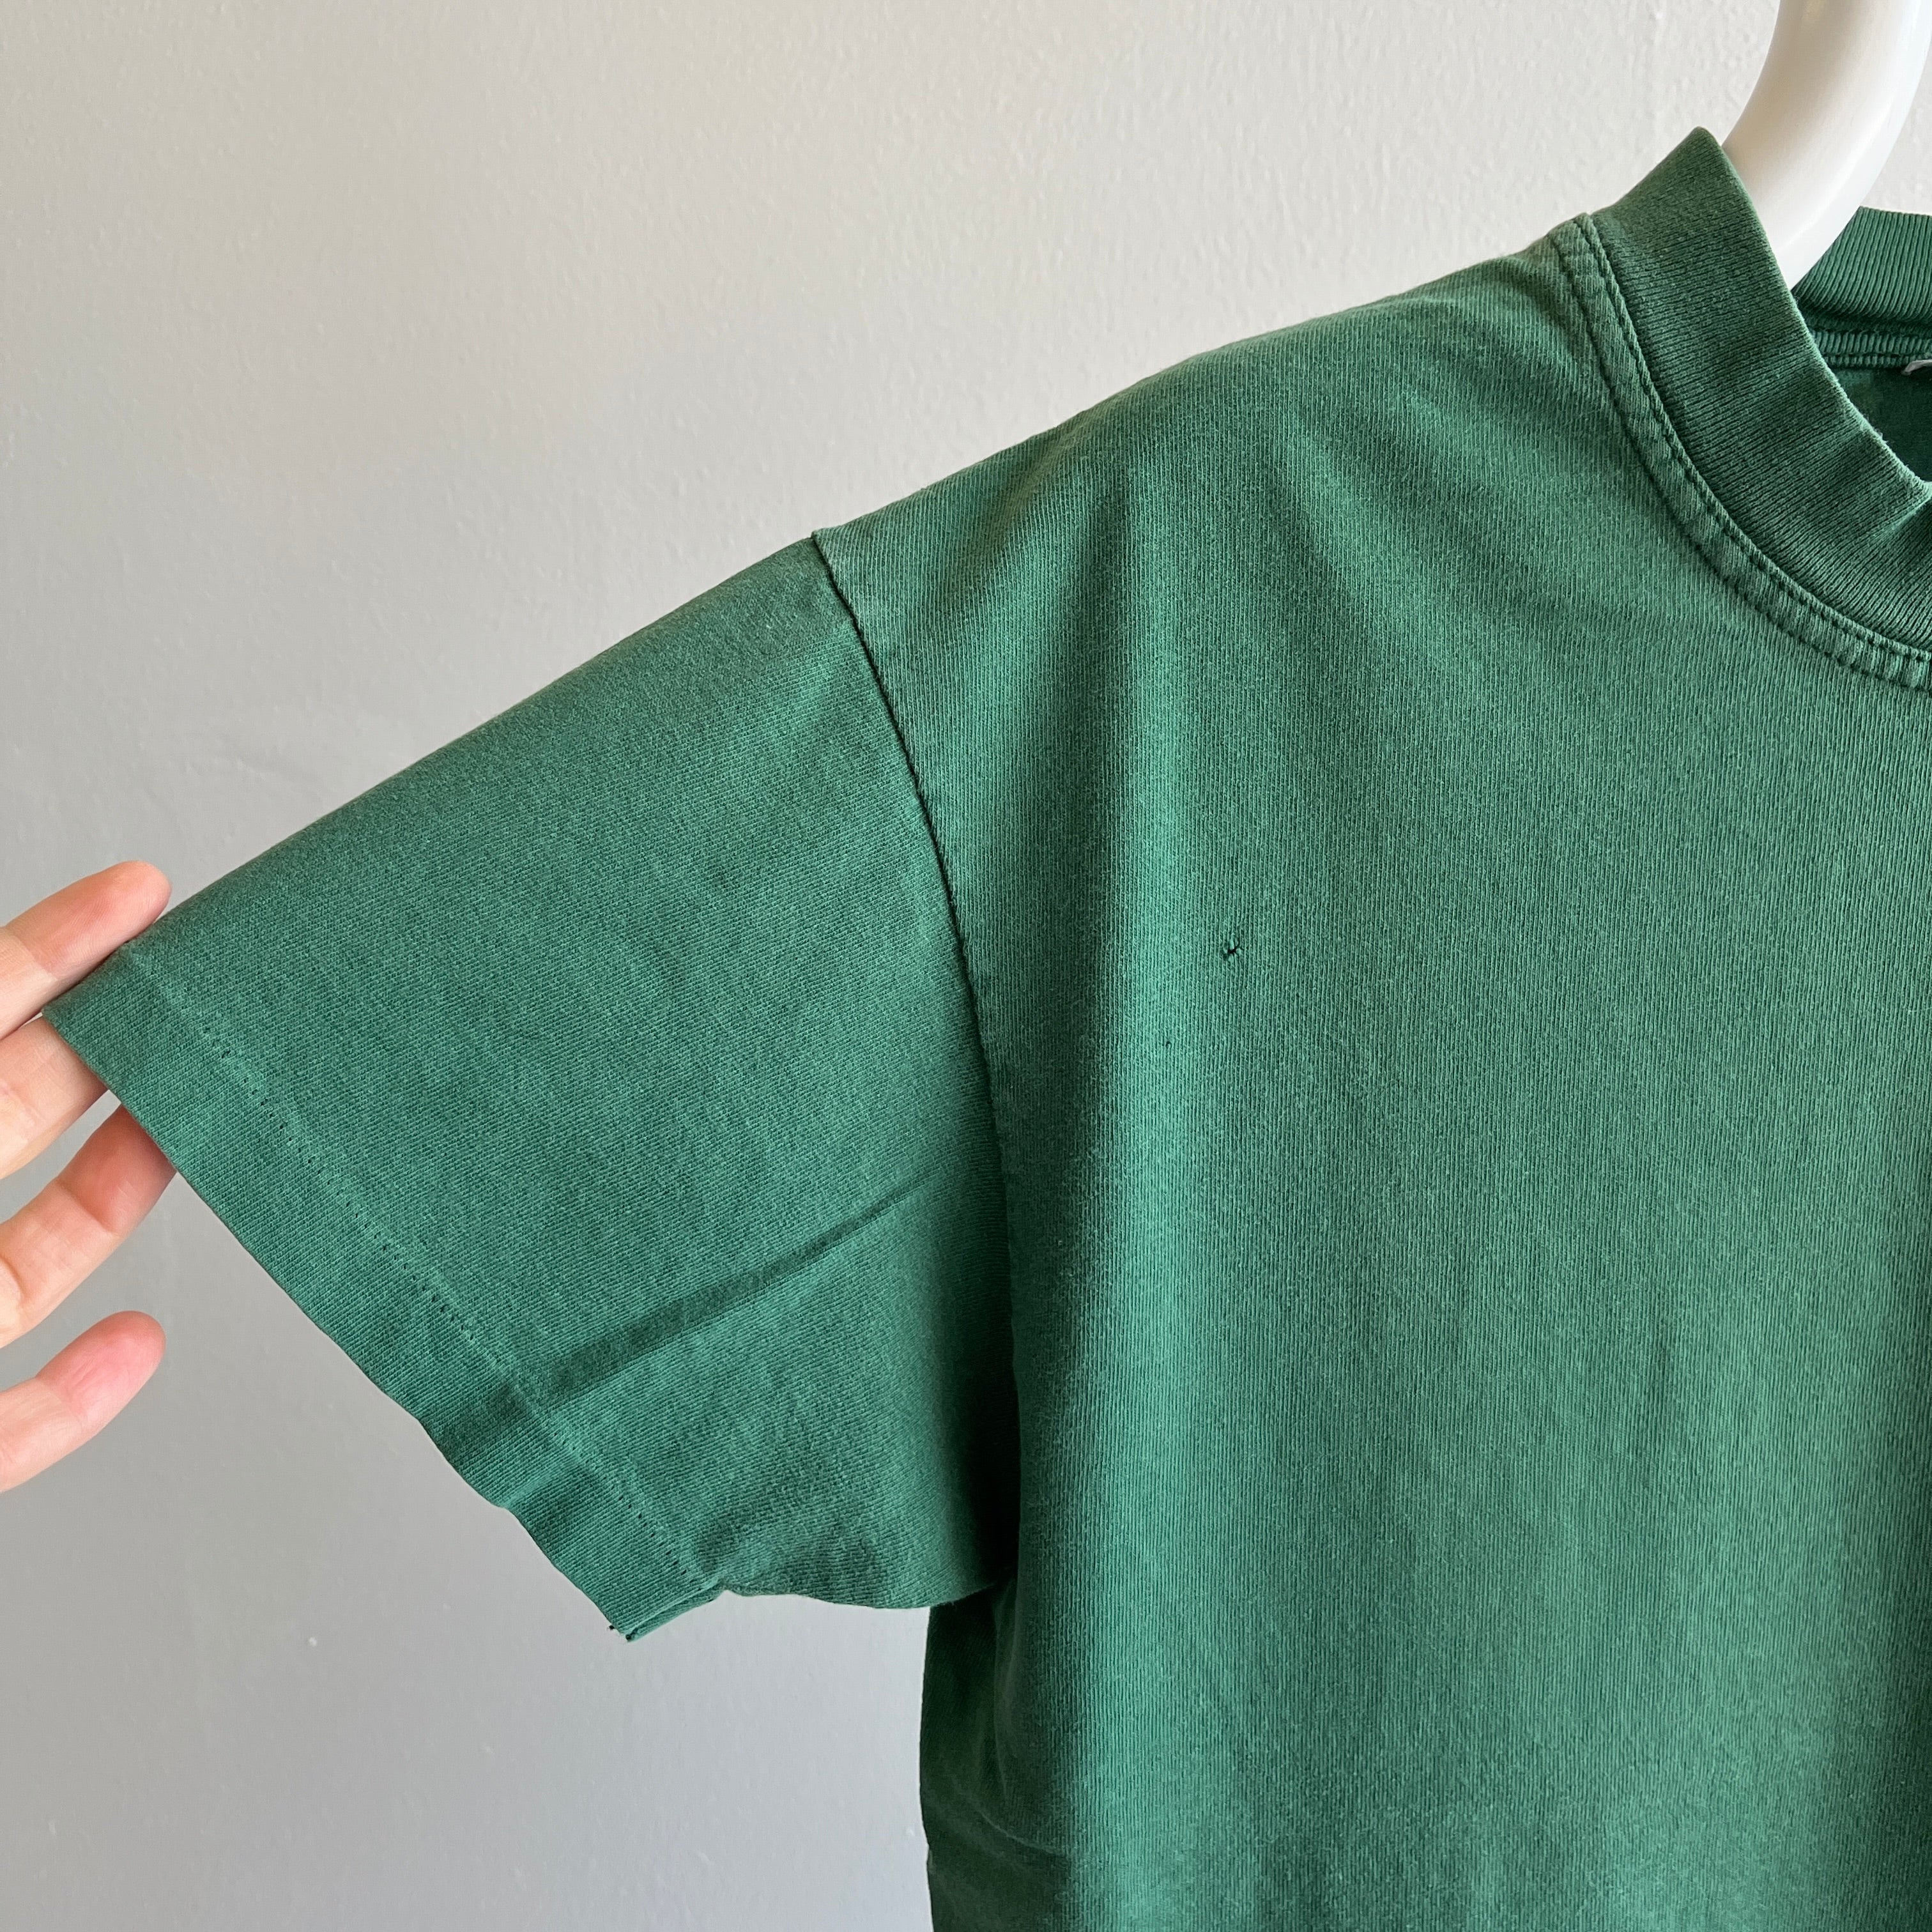 T-shirt de poche vert chasseur délavé des années 1990 par Hanes